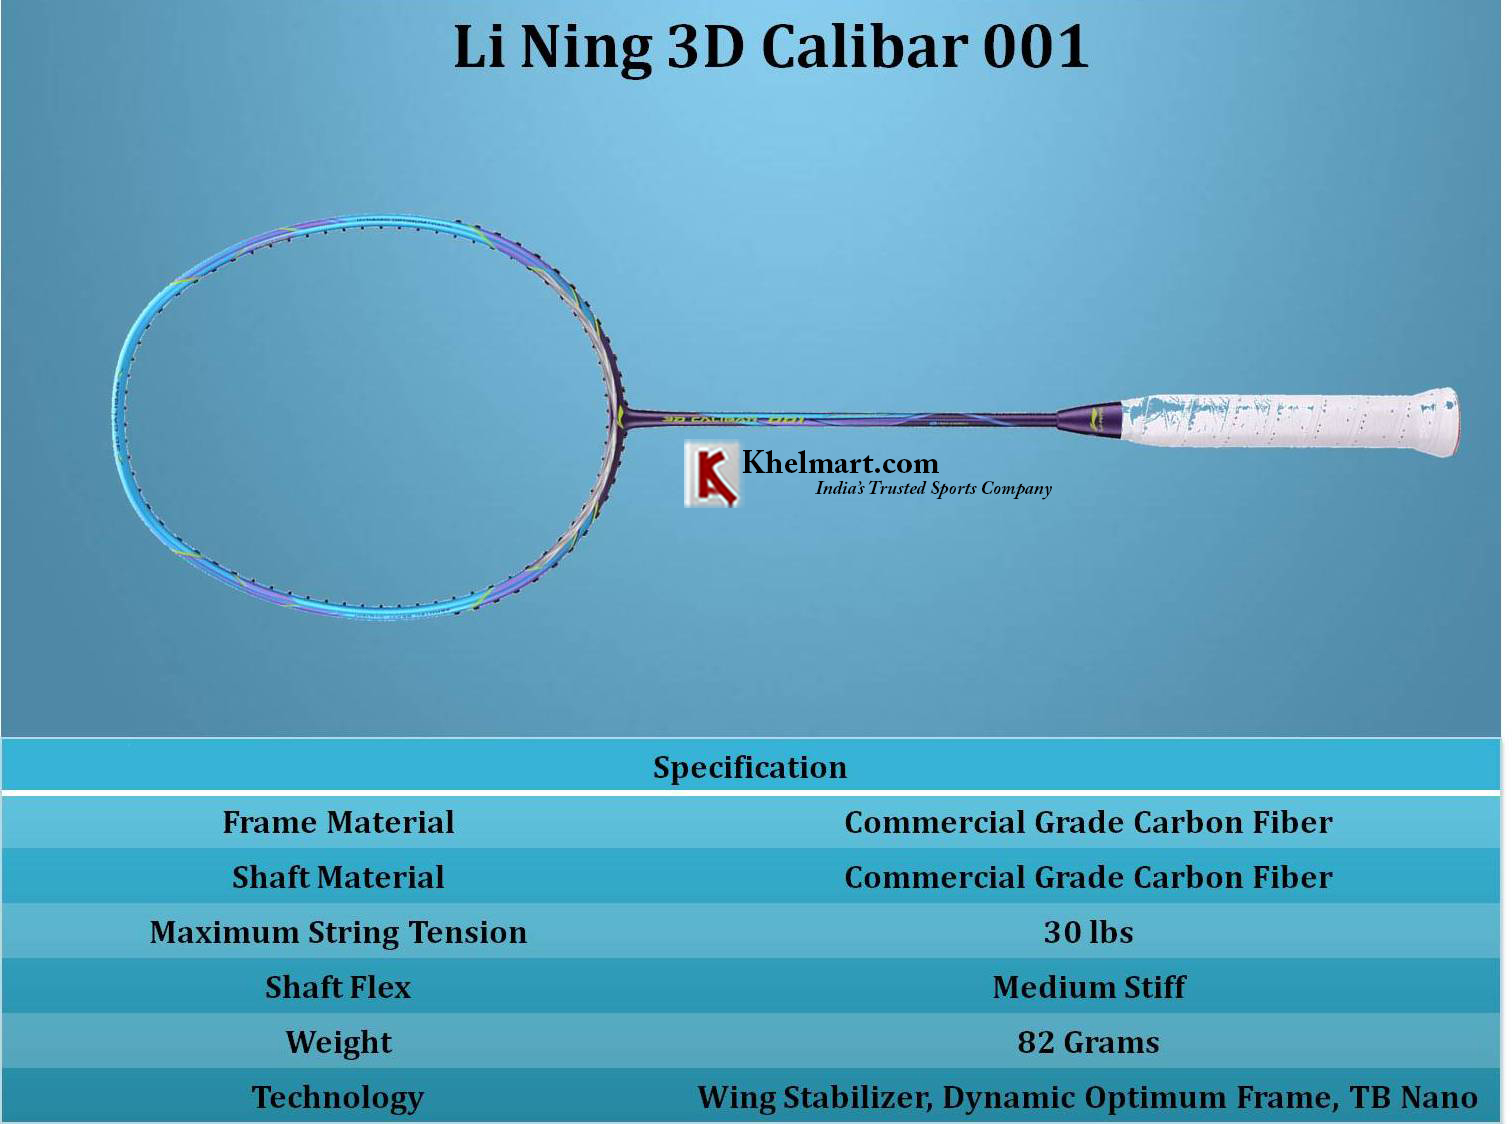 Li_Ning_3D_Calibar_001_Specification_Khemart_1